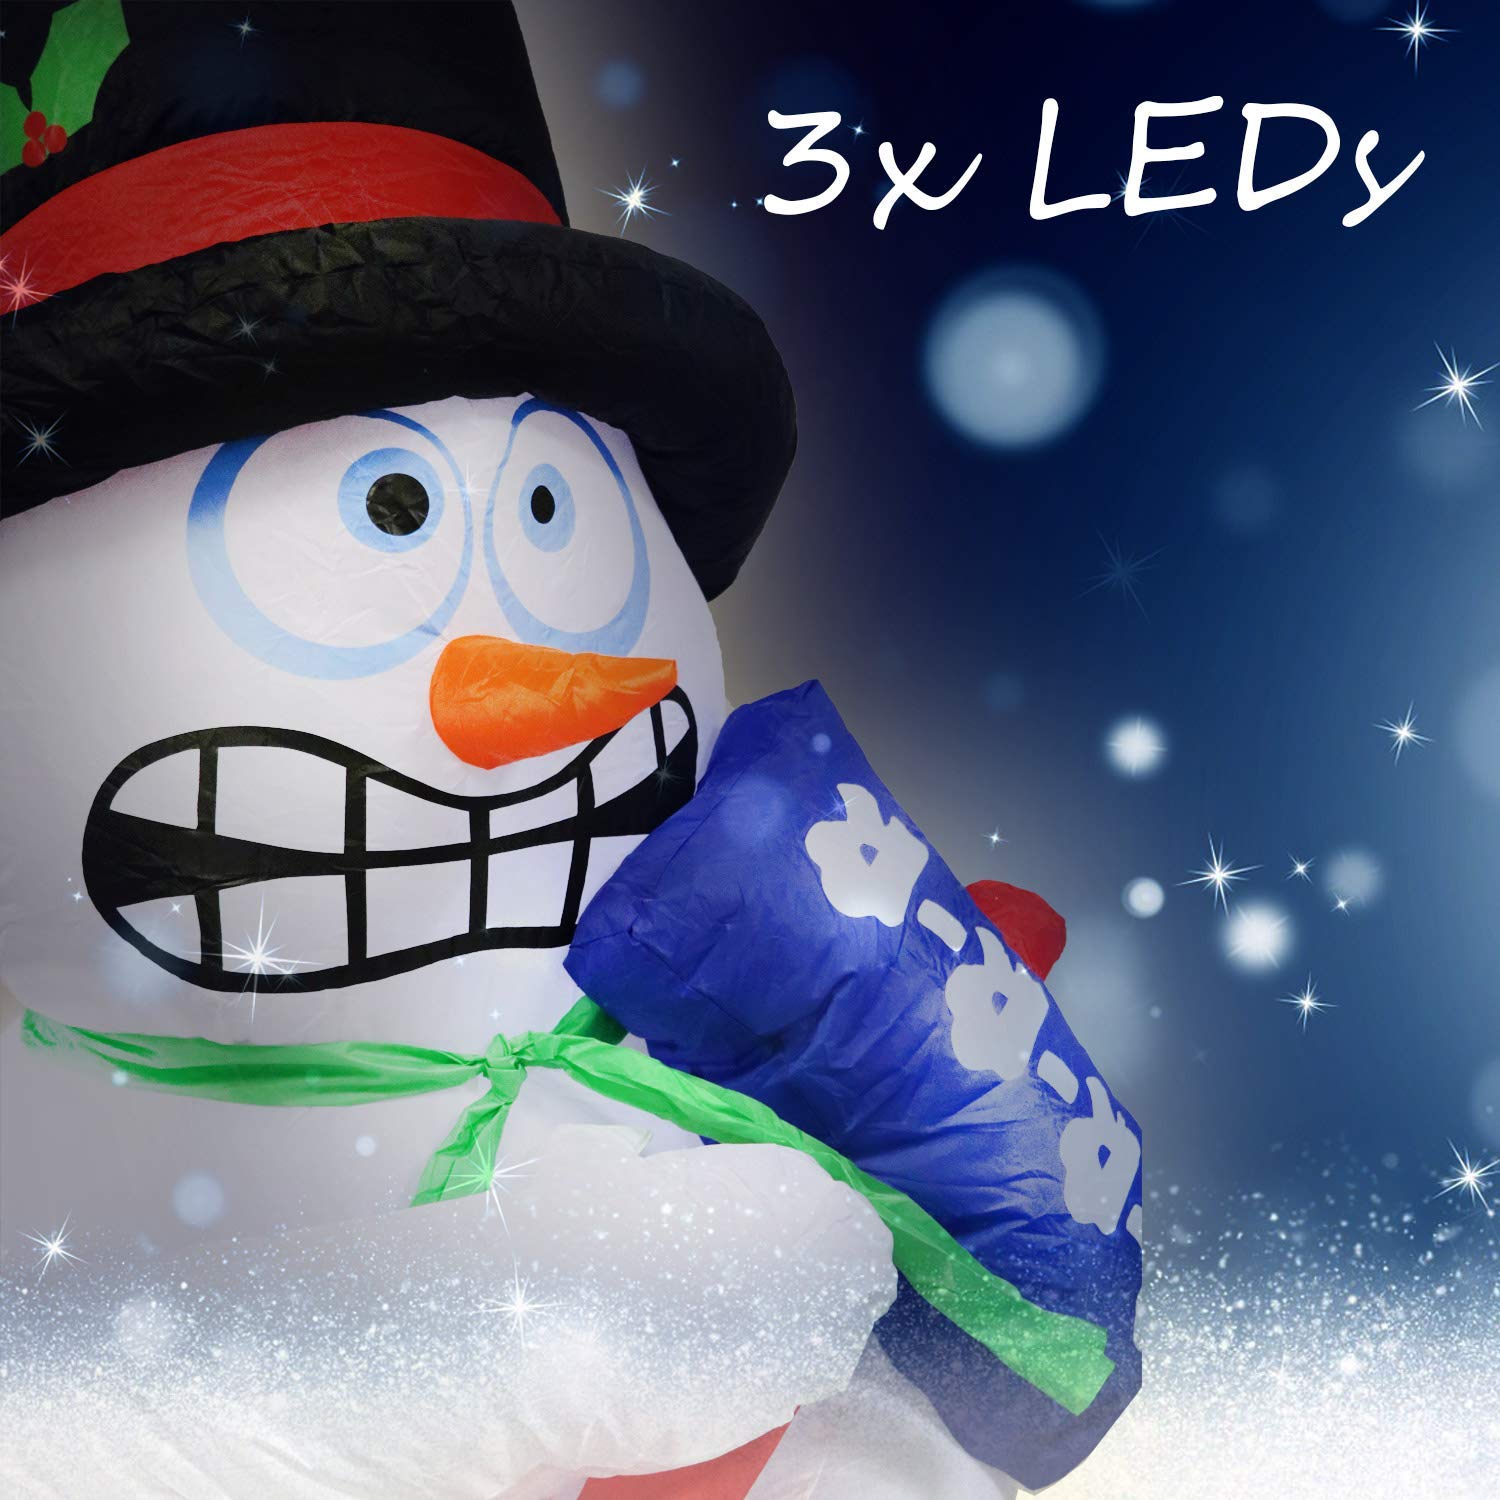 Tronje, aufblasbarer Schneeman, 180cm H, Zitterfunktion, 3 LEDs, Gebläse, Netzteil